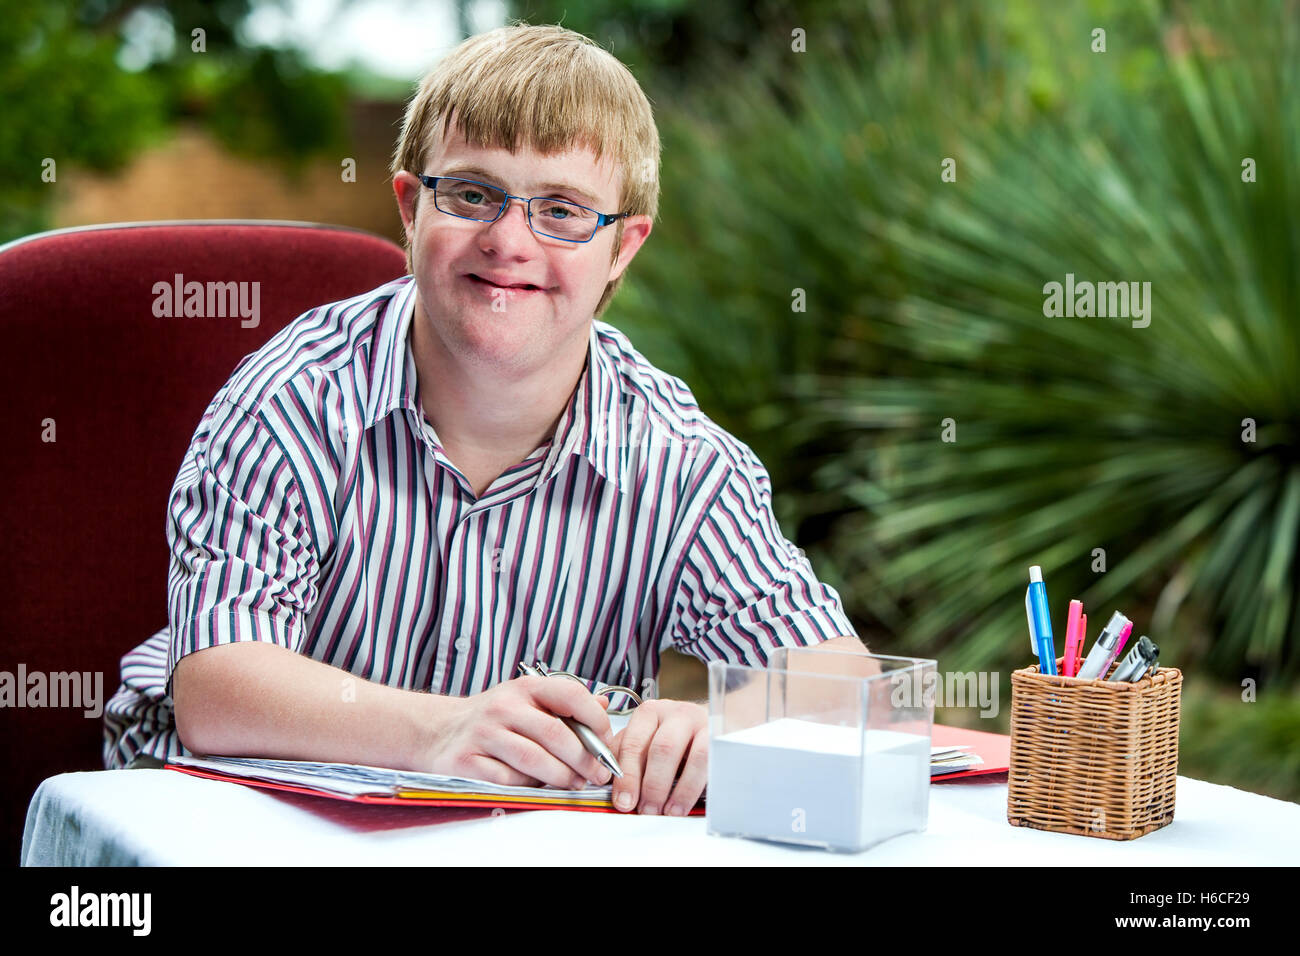 Porträt von behinderten Schüler mit Brille am Schalter im Garten hautnah. Stockfoto